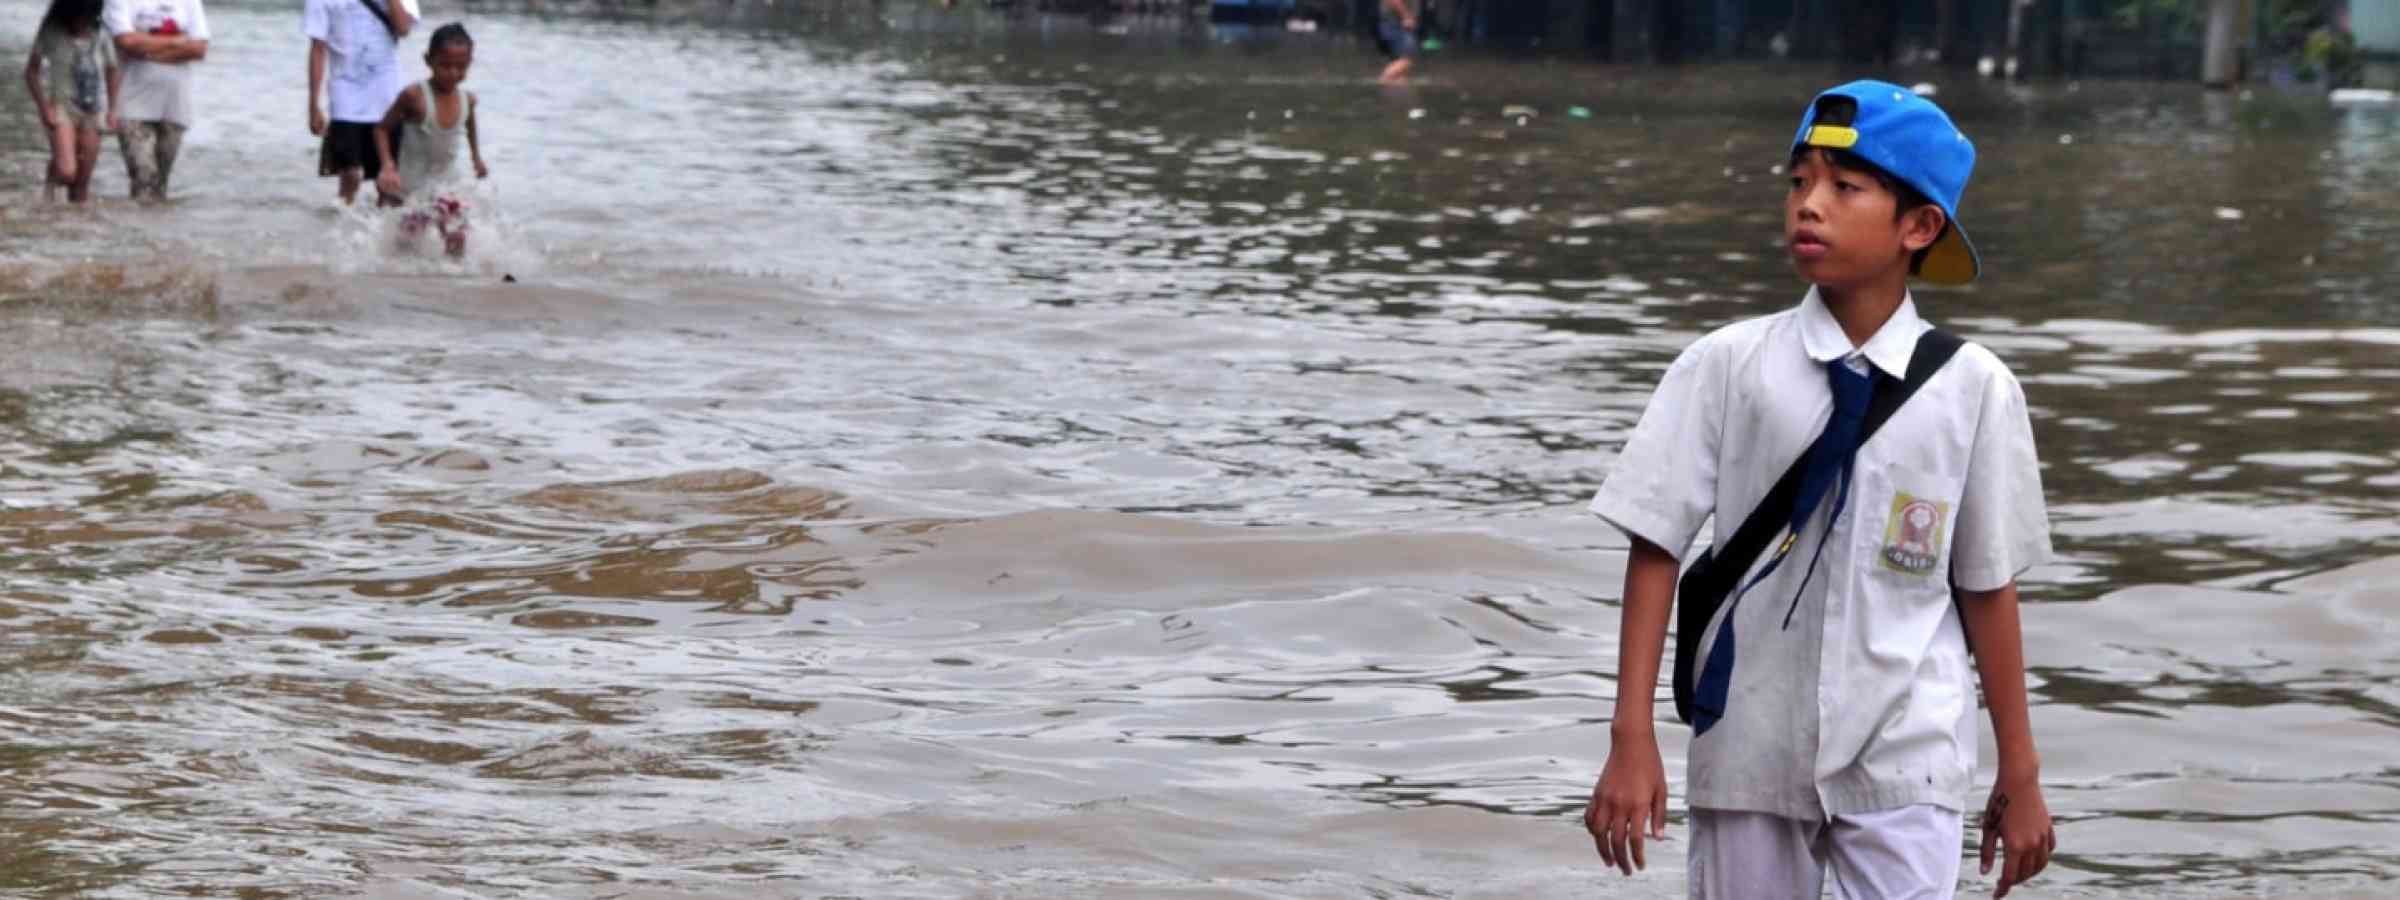 A child walking across flooded school in Jakarta - Indonesia